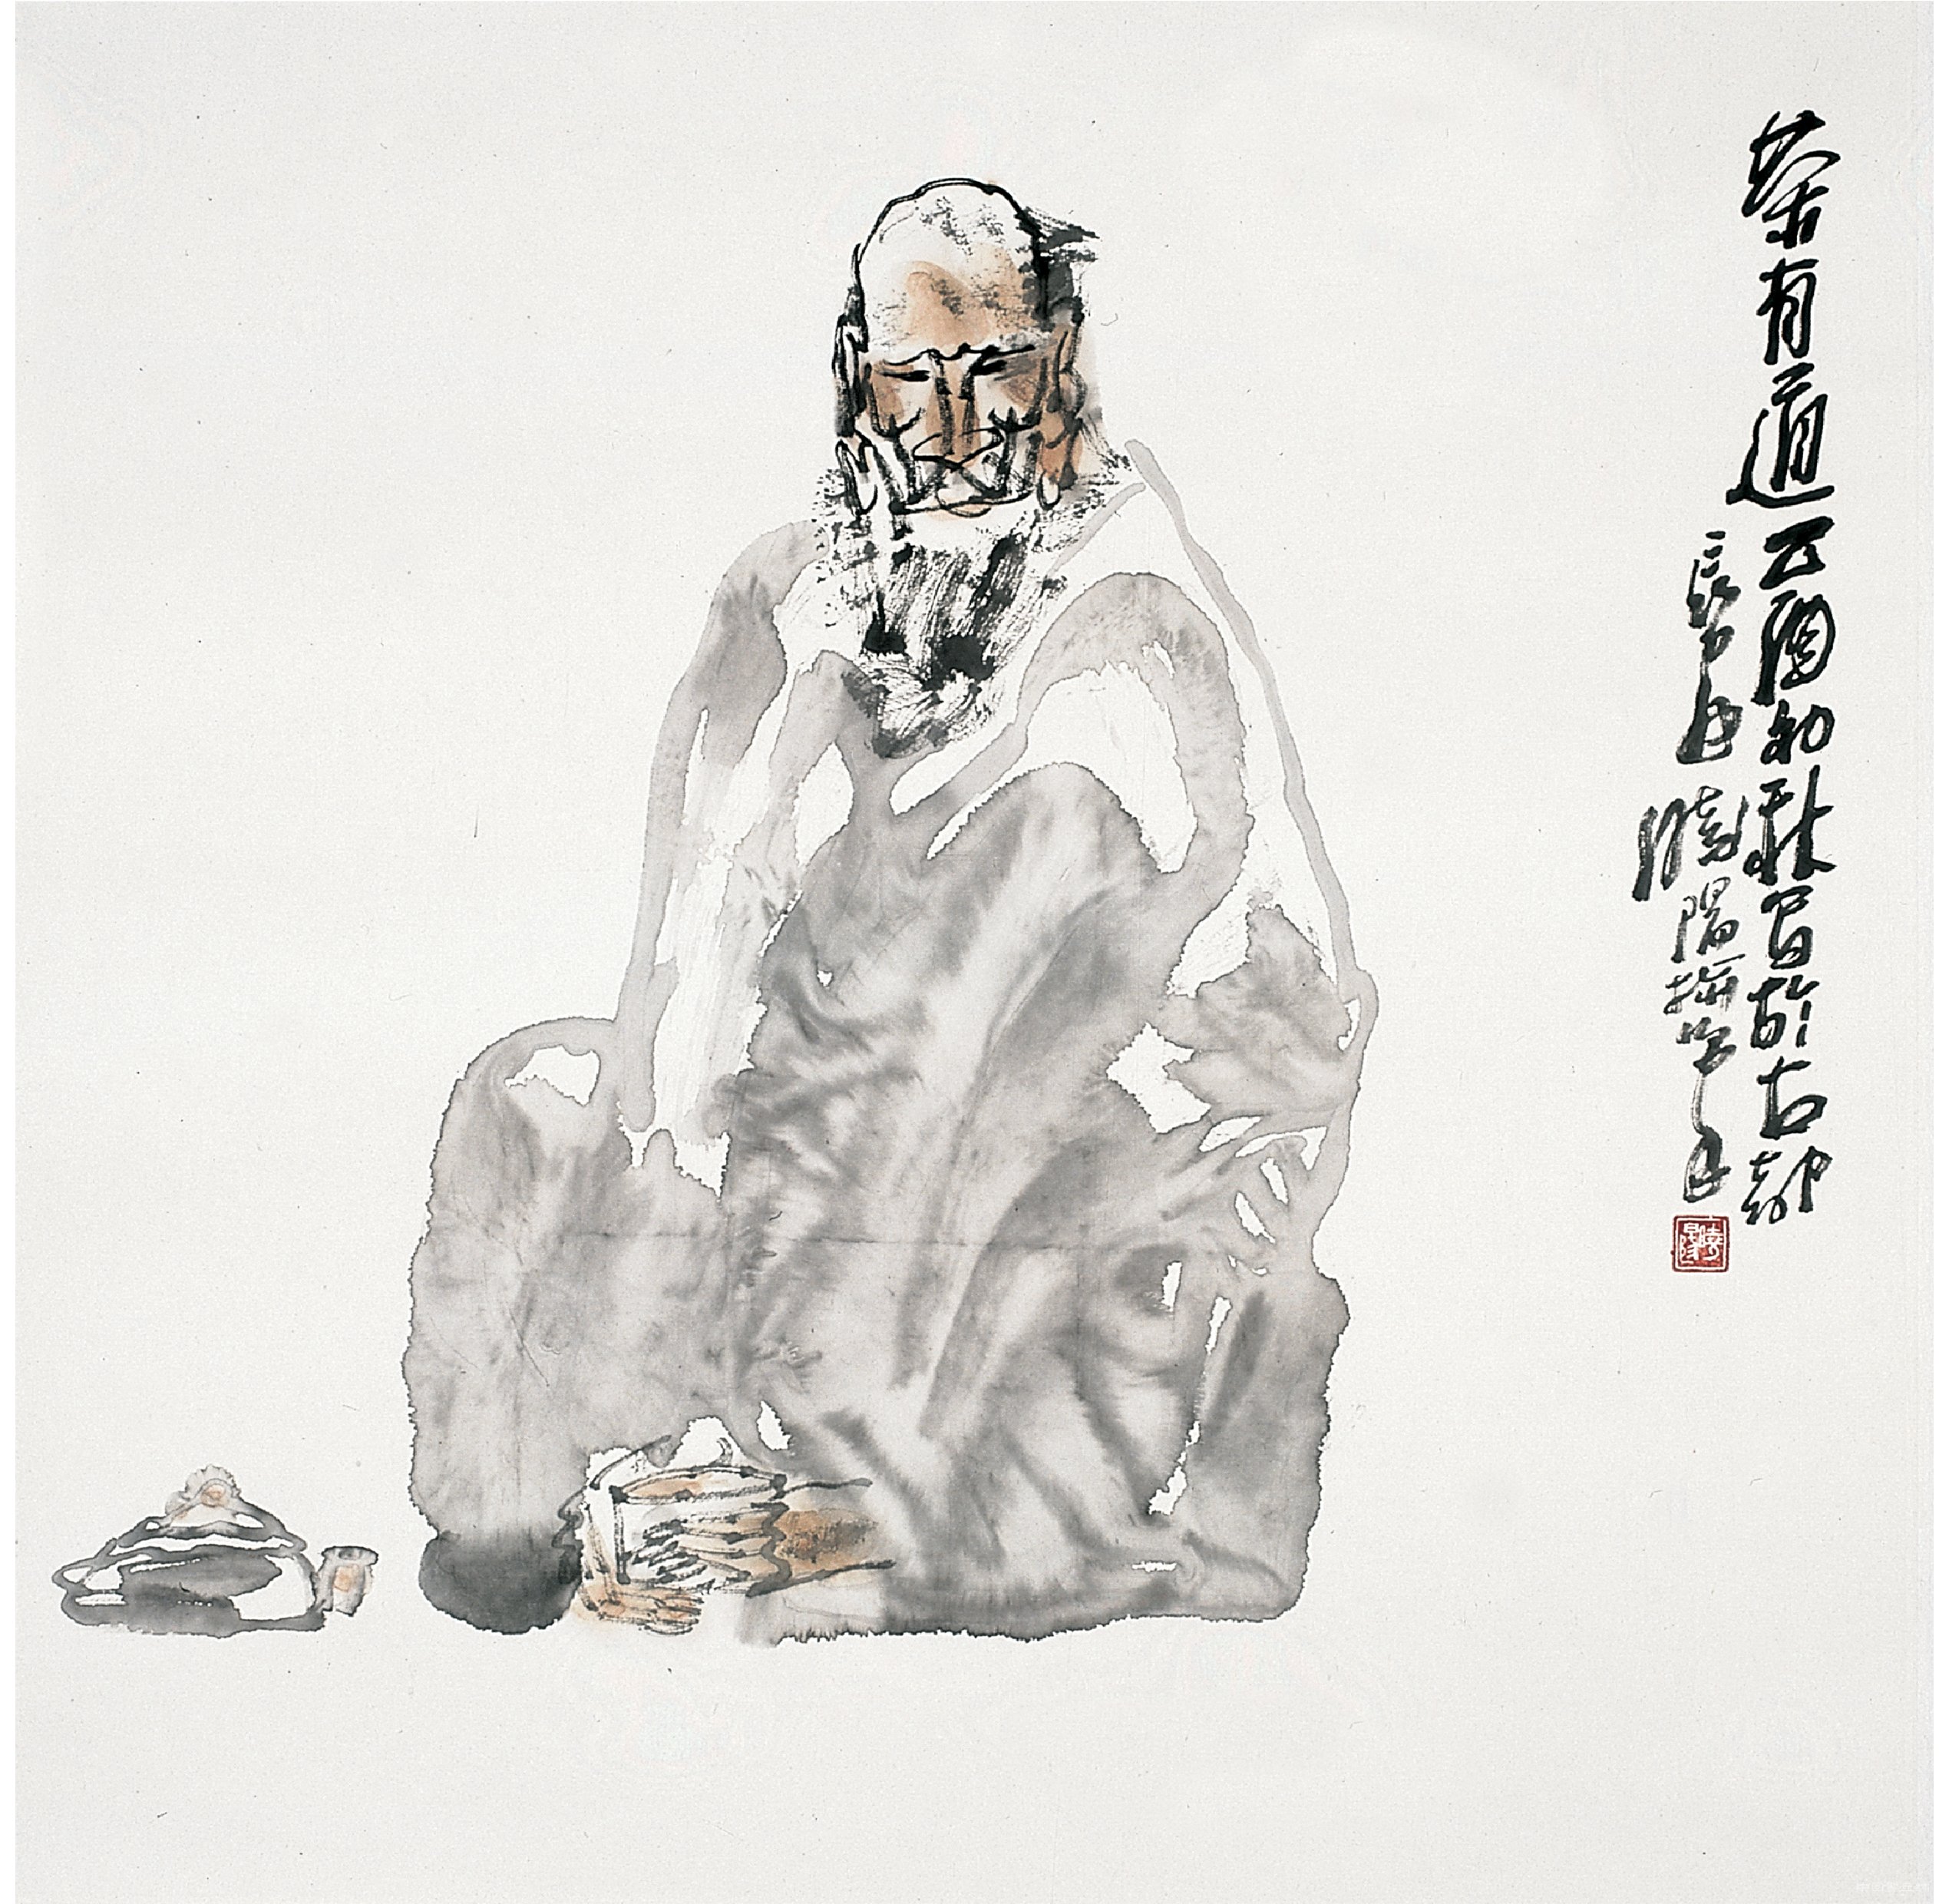 杨晓阳艺术回溯与丝路创作30年